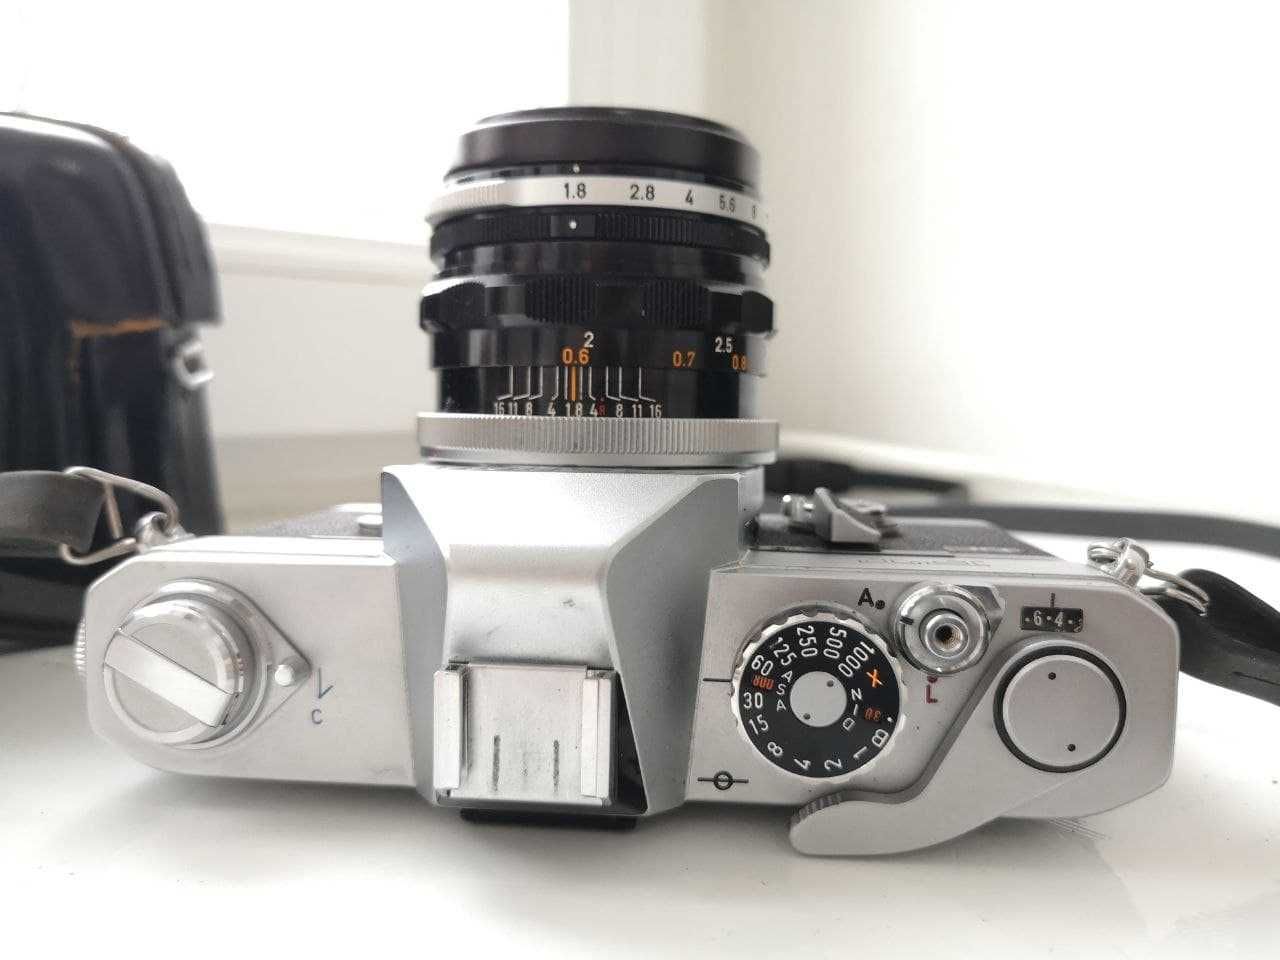 Пленочная фотокамера Canon FT QL + объектив Canon Lens FL 50mm f/ 1.8